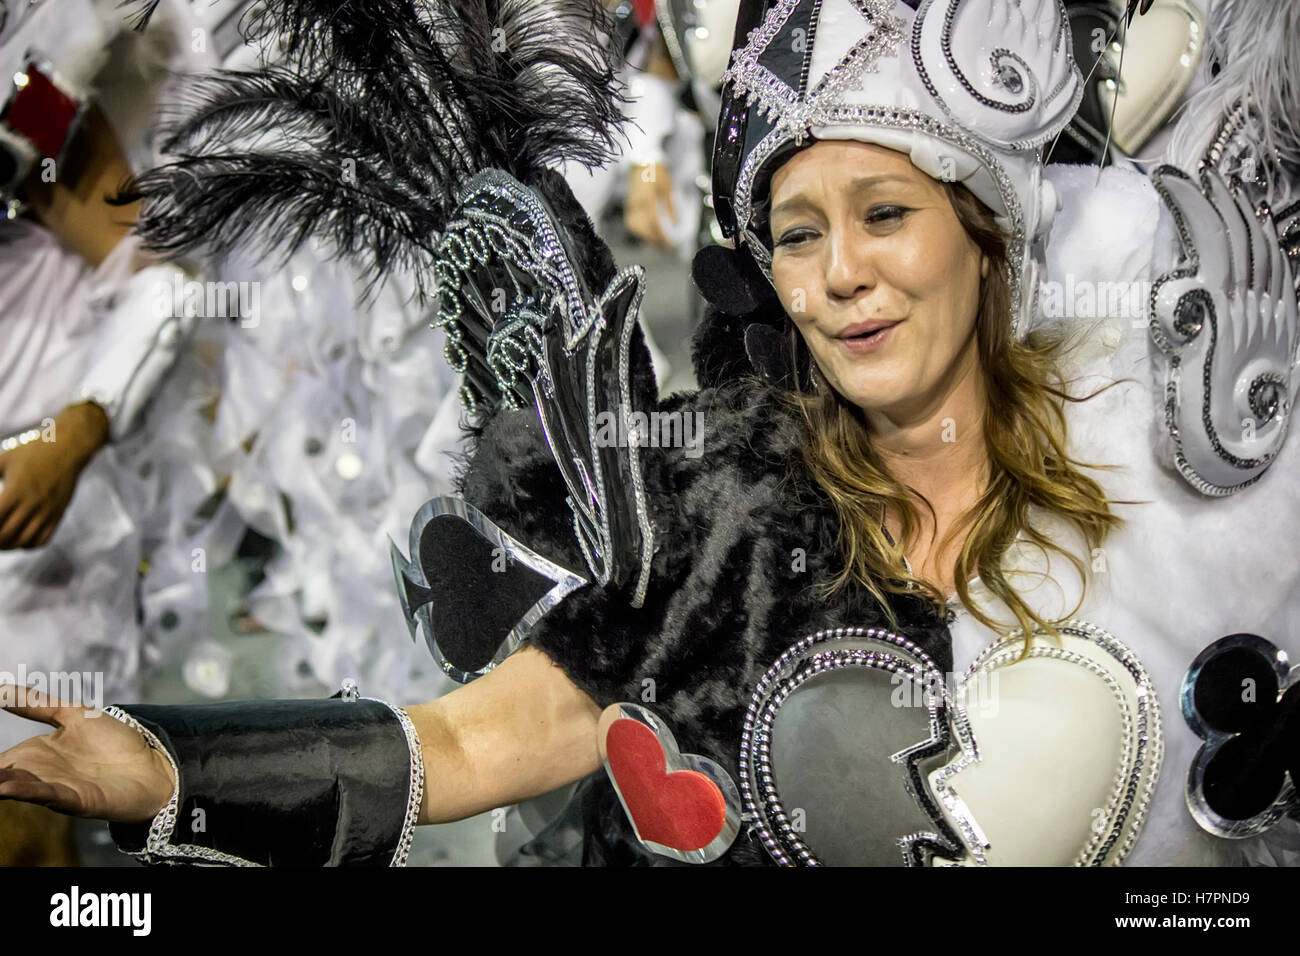 São Paulo, Brasilien - 14. Februar 2015: Menschen im Kostüm für Karneval Paraden. Stockfoto